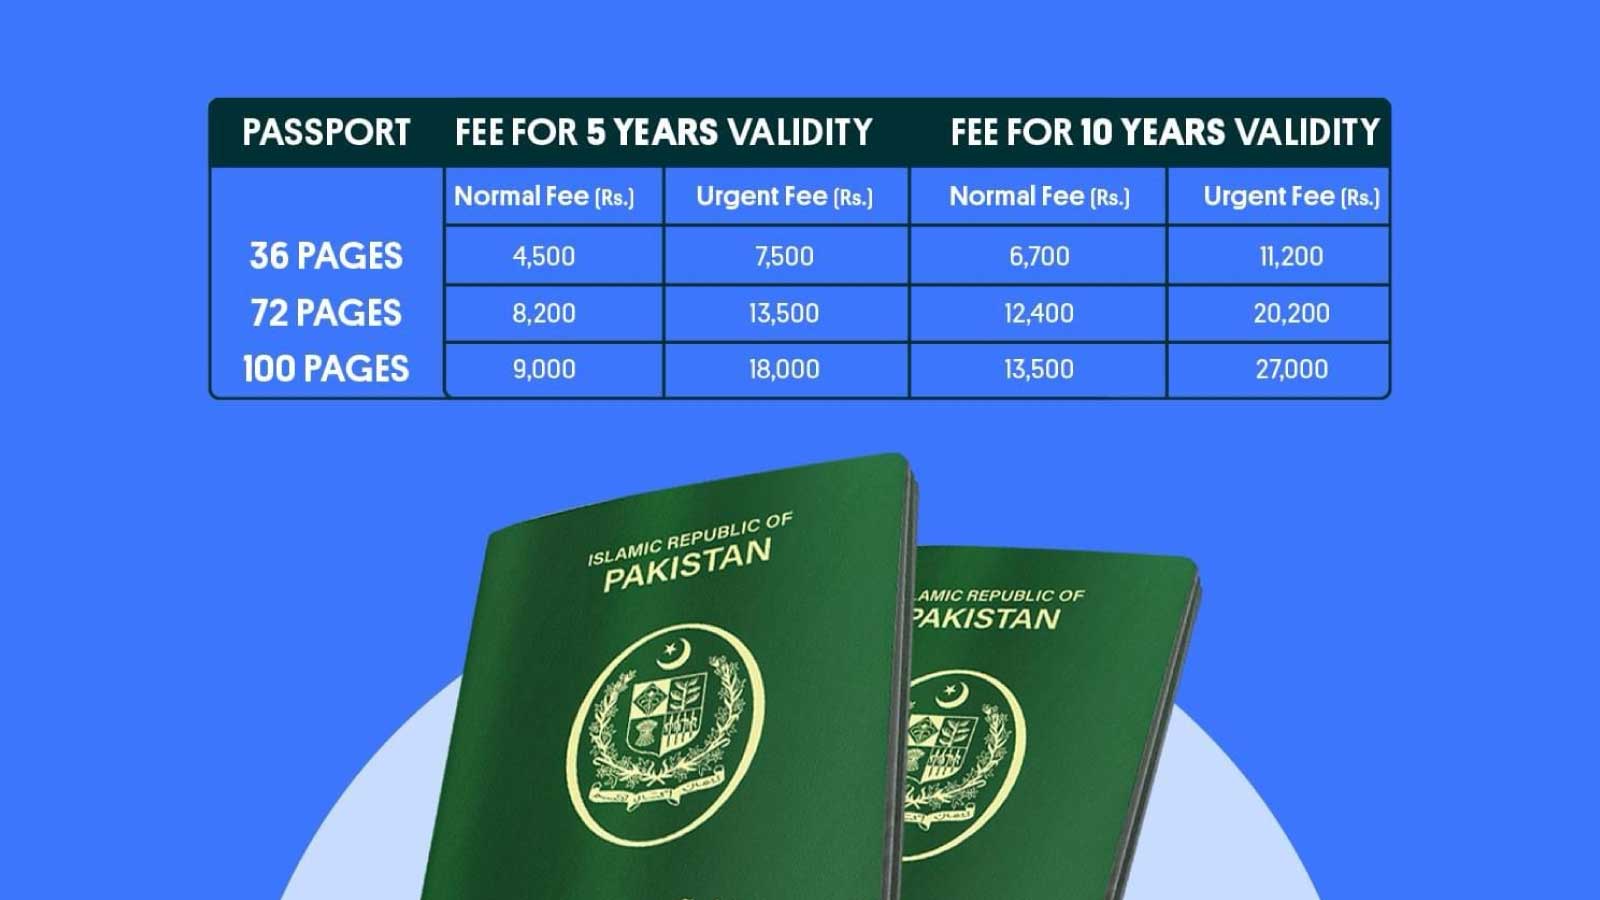 Pakistan passport fee